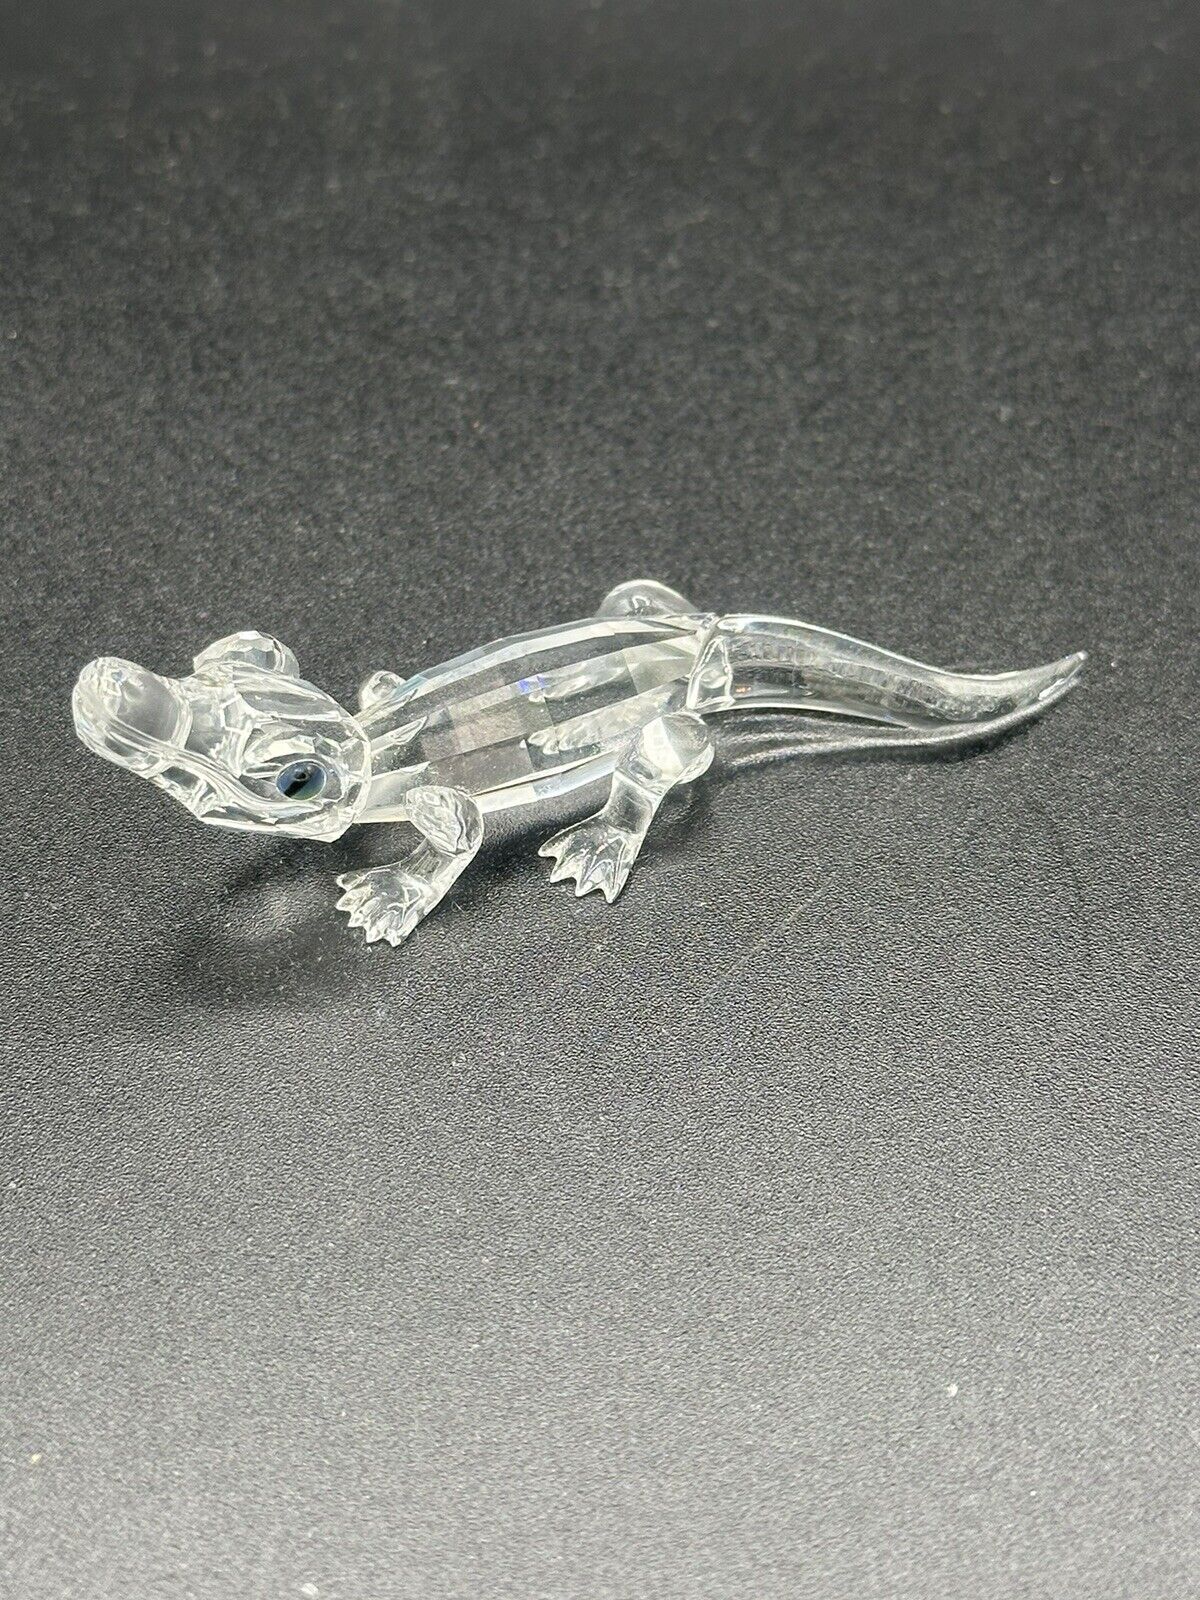 Swarovski Crystal Baby Alligator Figurine